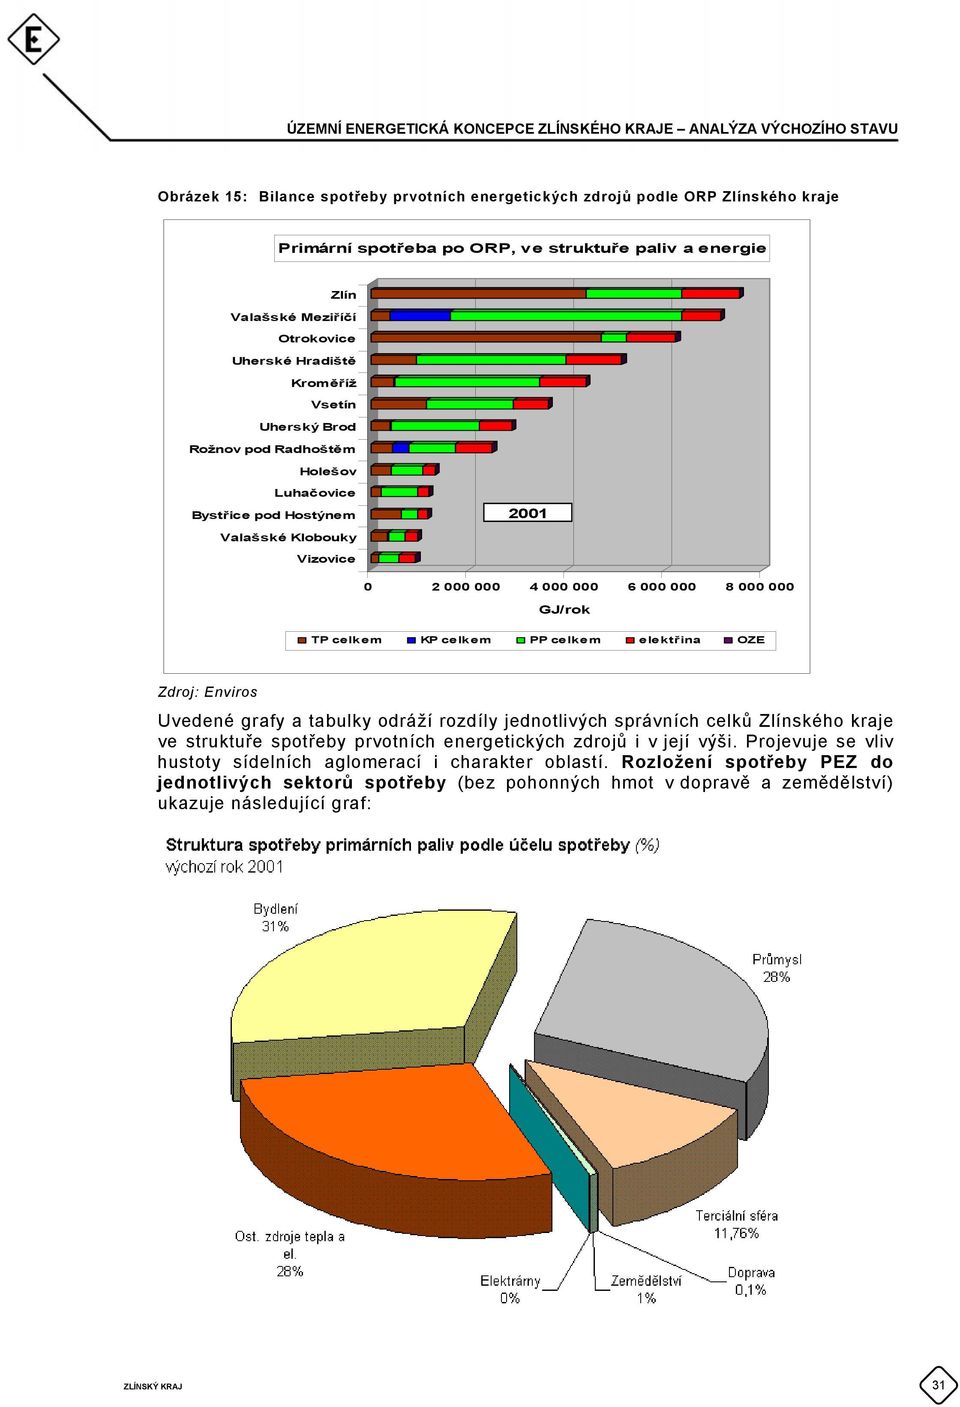 celkem elektřina OZE Zdroj: Enviros Uvedené grafy a tabulky odráží rozdíly jednotlivých správních celků Zlínského kraje ve struktuře spotřeby prvotních energetických zdrojů i v její výši.